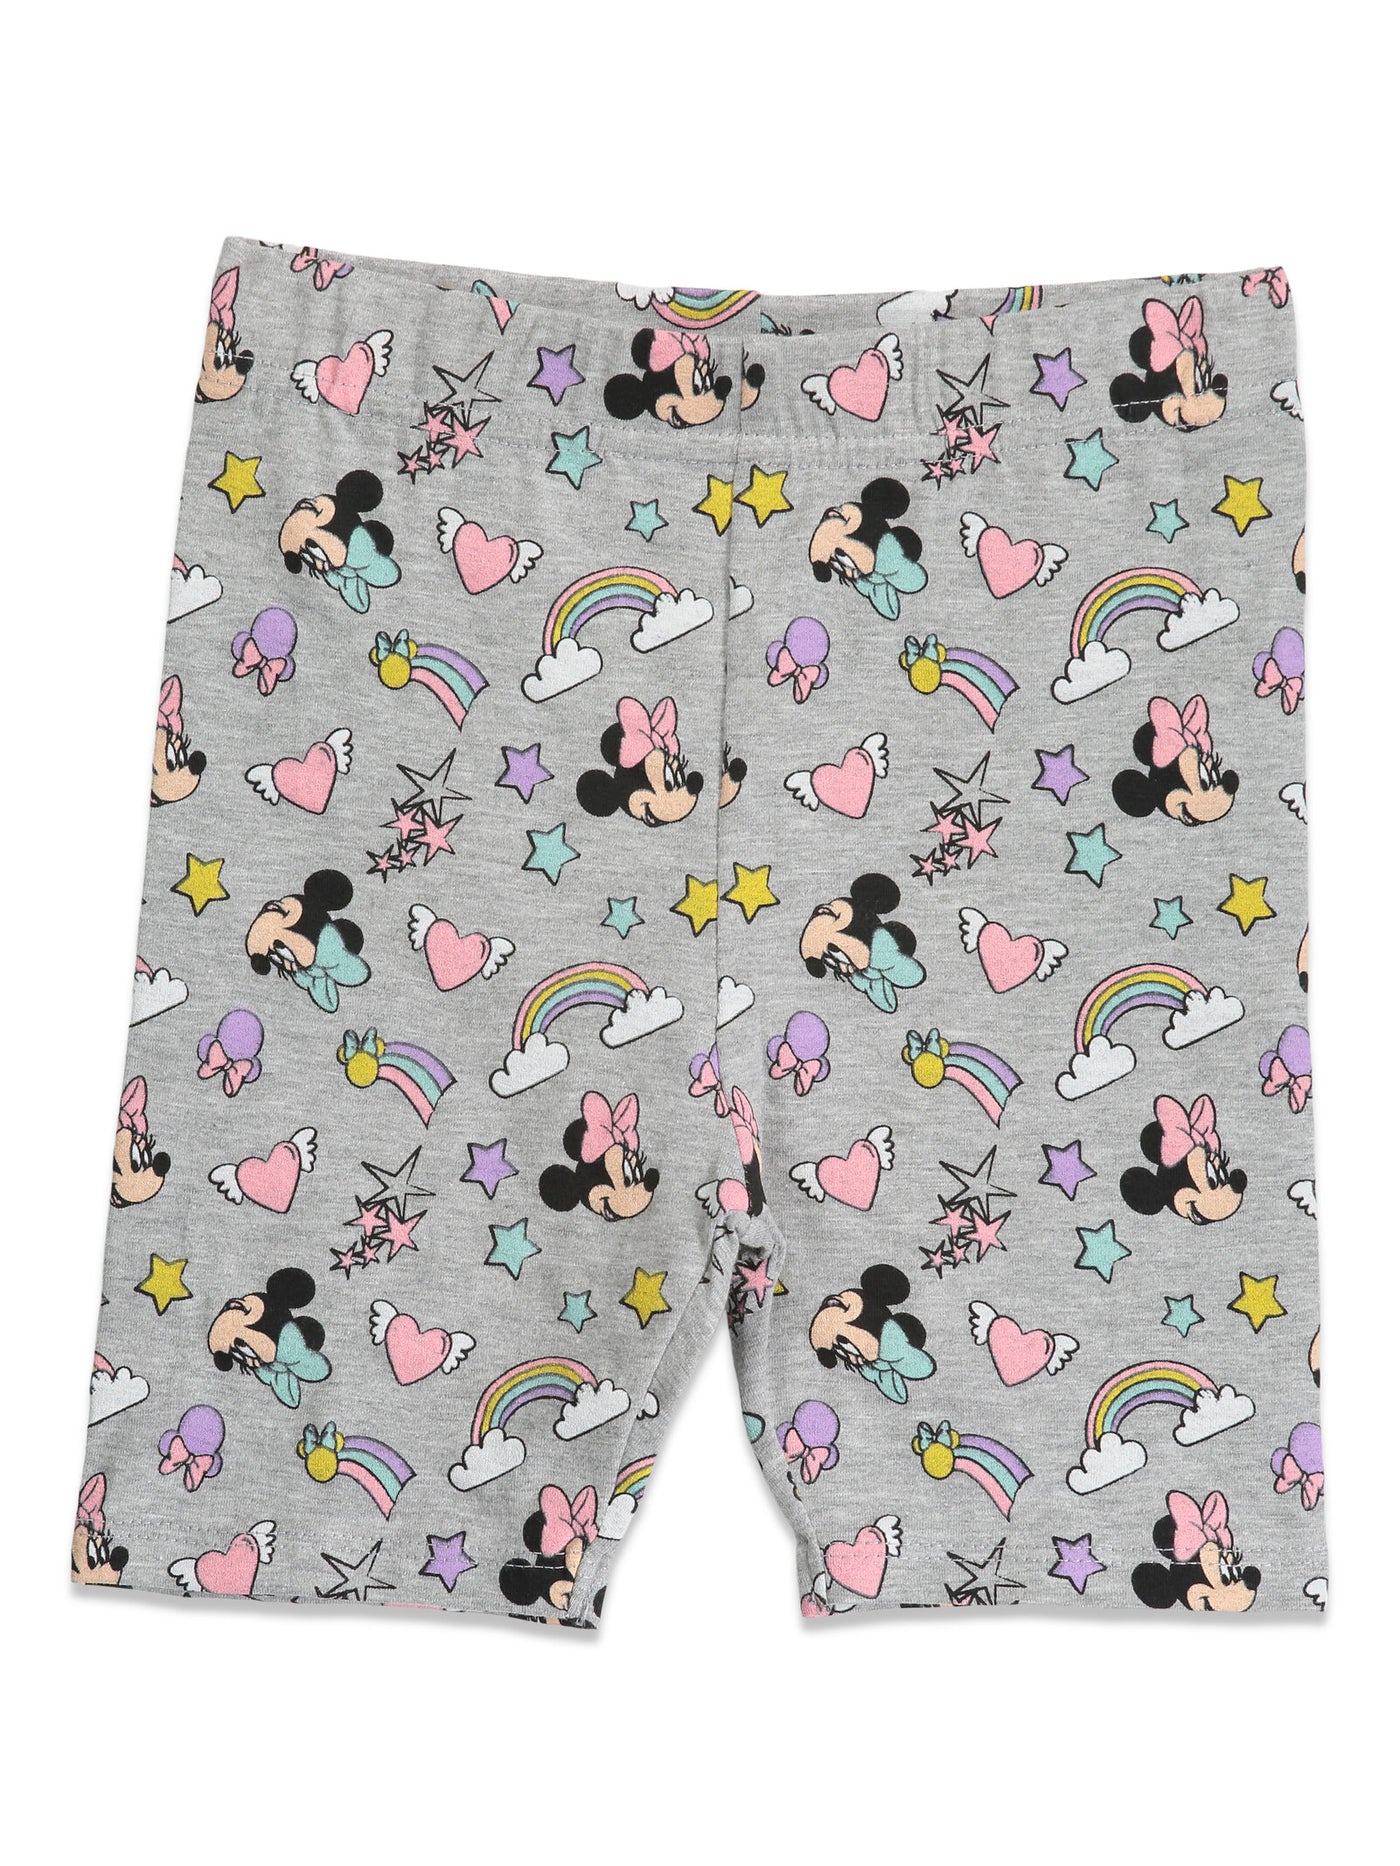 Conjunto de camiseta y shorts de ciclista de Minnie Mouse